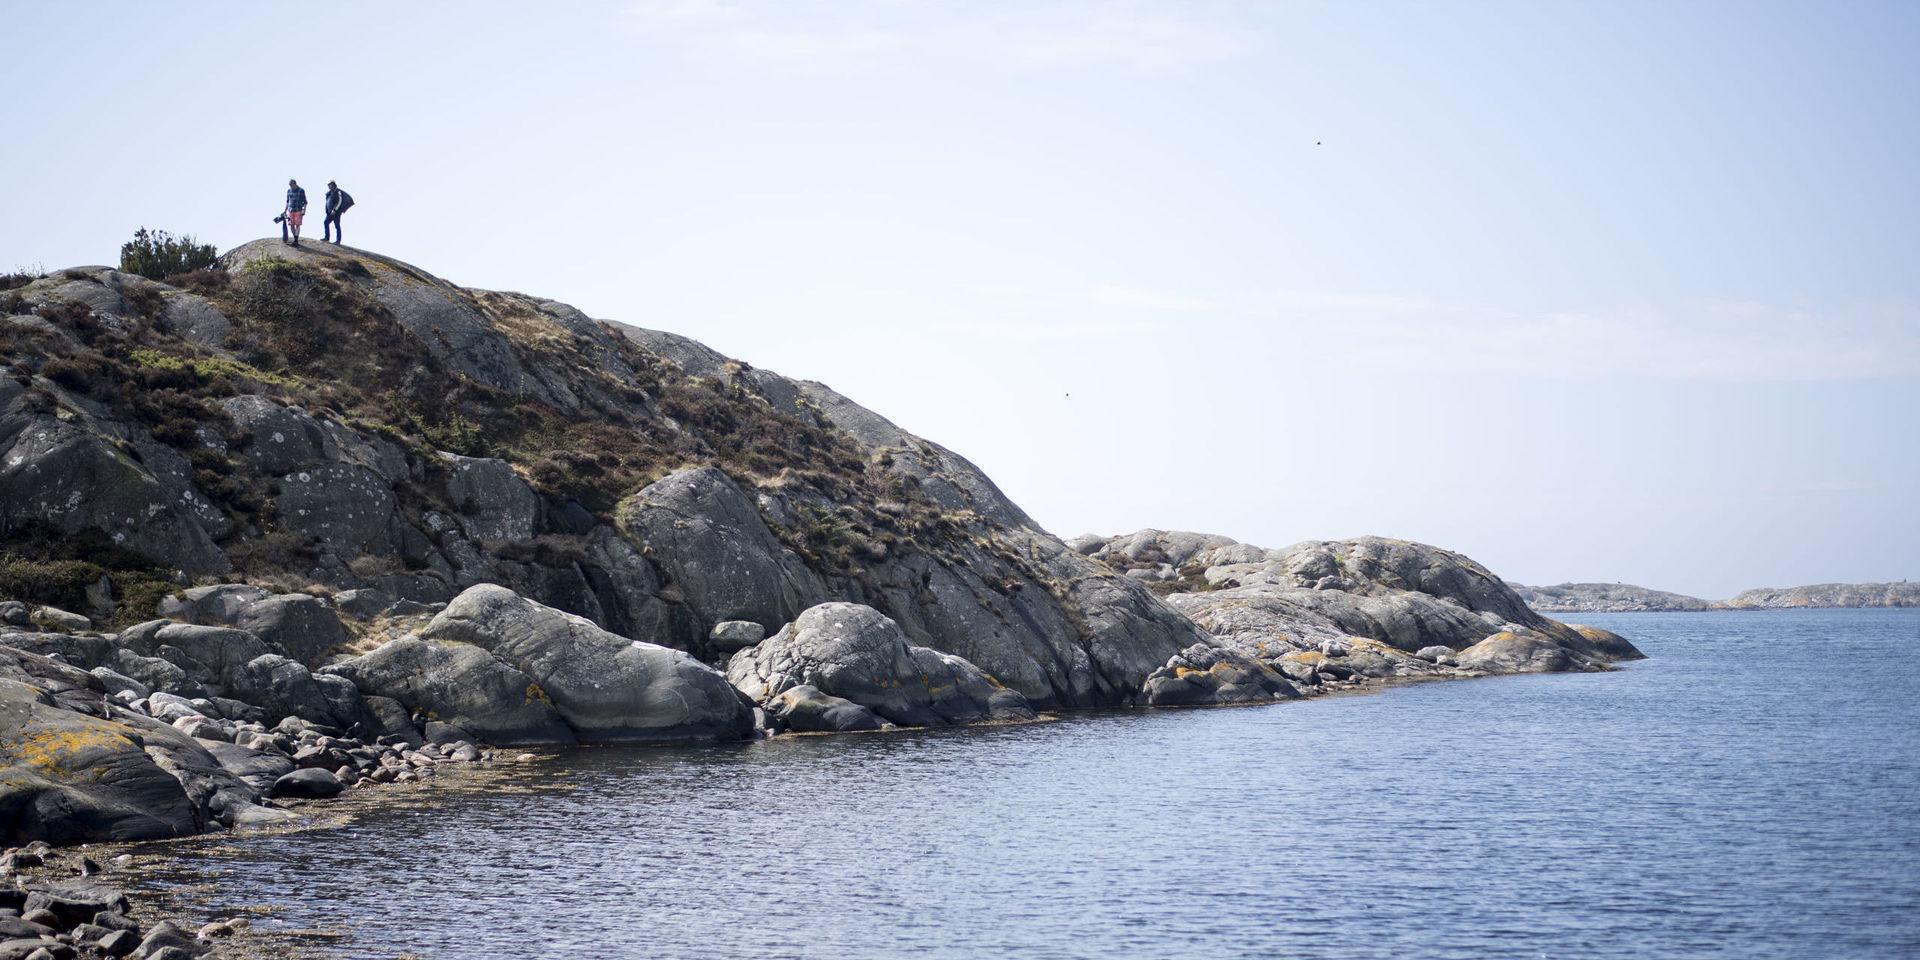 Blåskrabban från Asien anses för första gången ha fortplantat sig vid den svenska västkusten. Arten är mycket konkurrenskraftig och befaras kunna tränga undan den vanliga strandkrabban till lite djupare vatten. Arkivbild.